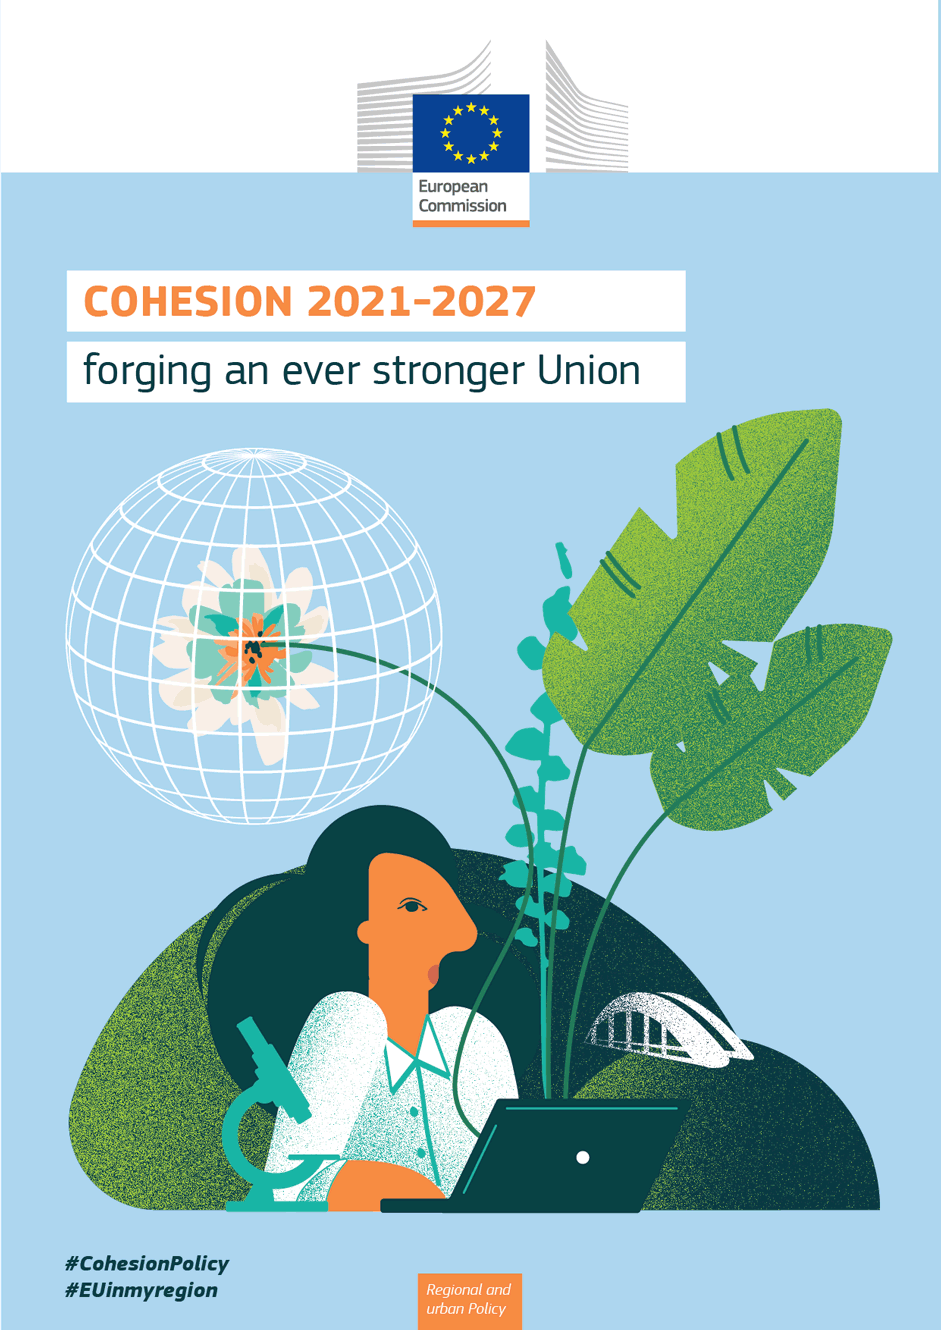 Πολιτική συνοχής της ΕΕ: τα προγράμματα της περιόδου 2021-2027 αναμένεται να δημιουργήσουν 1,3 εκατομμύρια θέσεις εργασίας στην ΕΕ